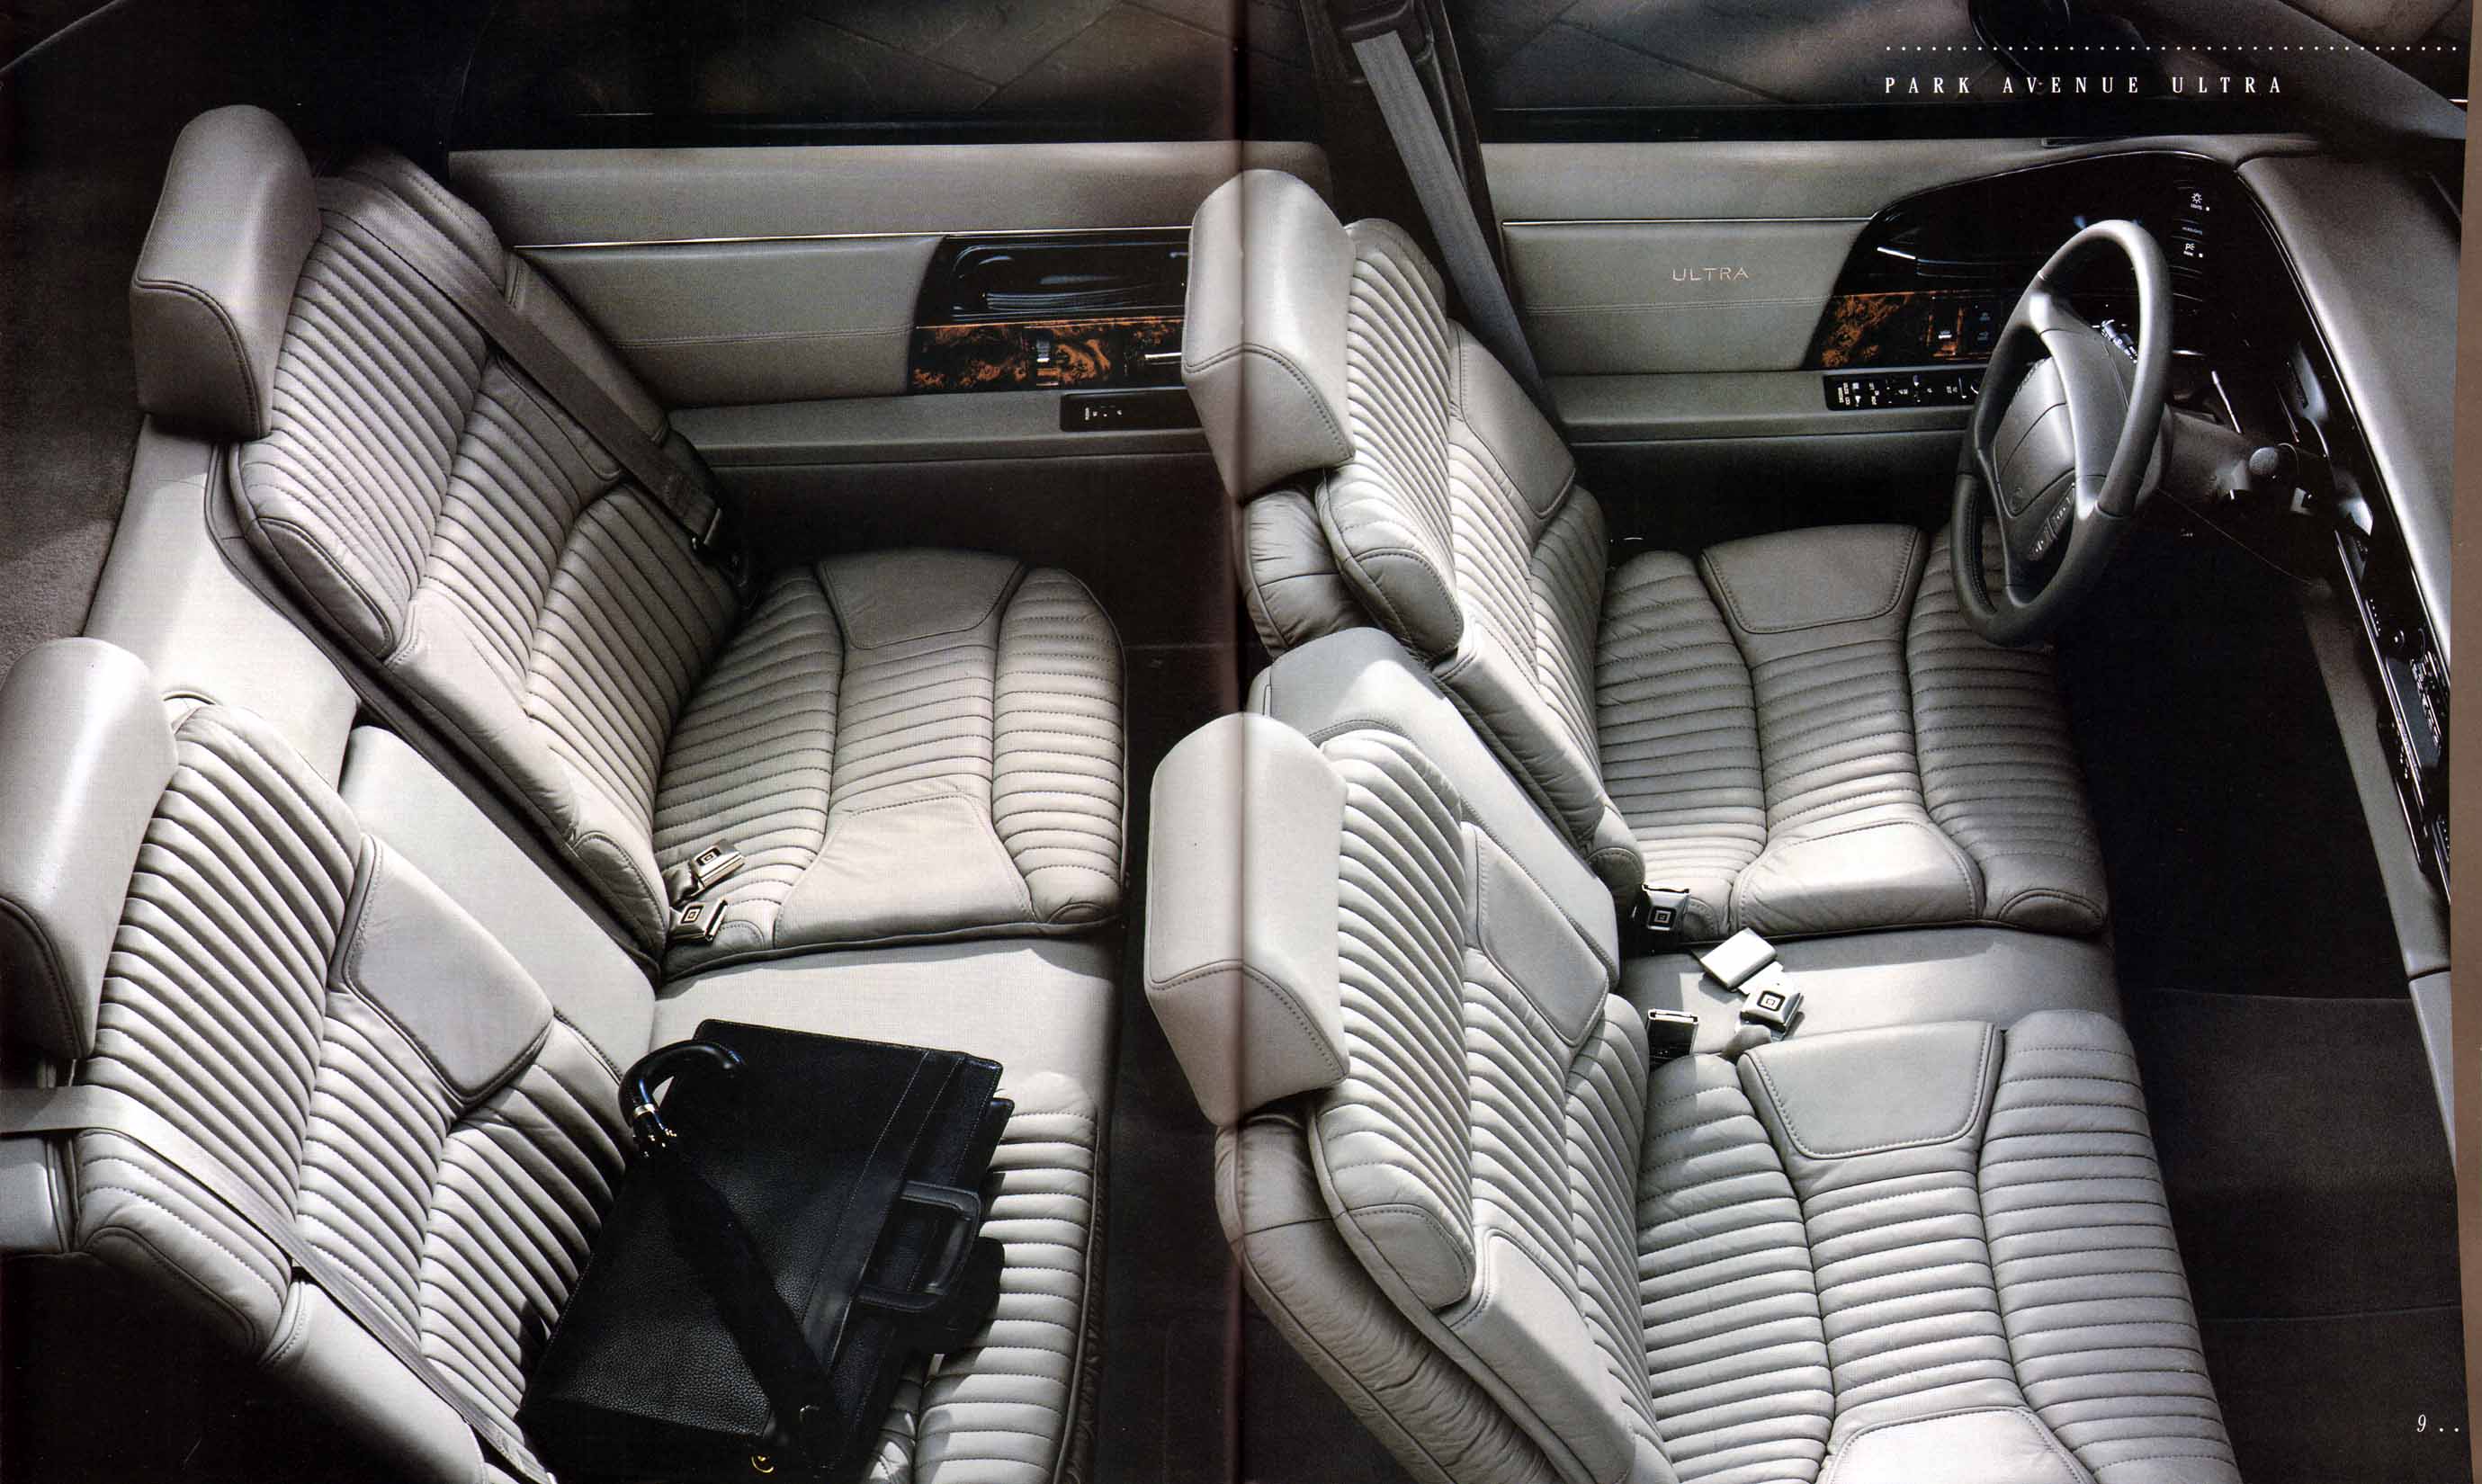 1995 Buick Full Line Prestige-08-09